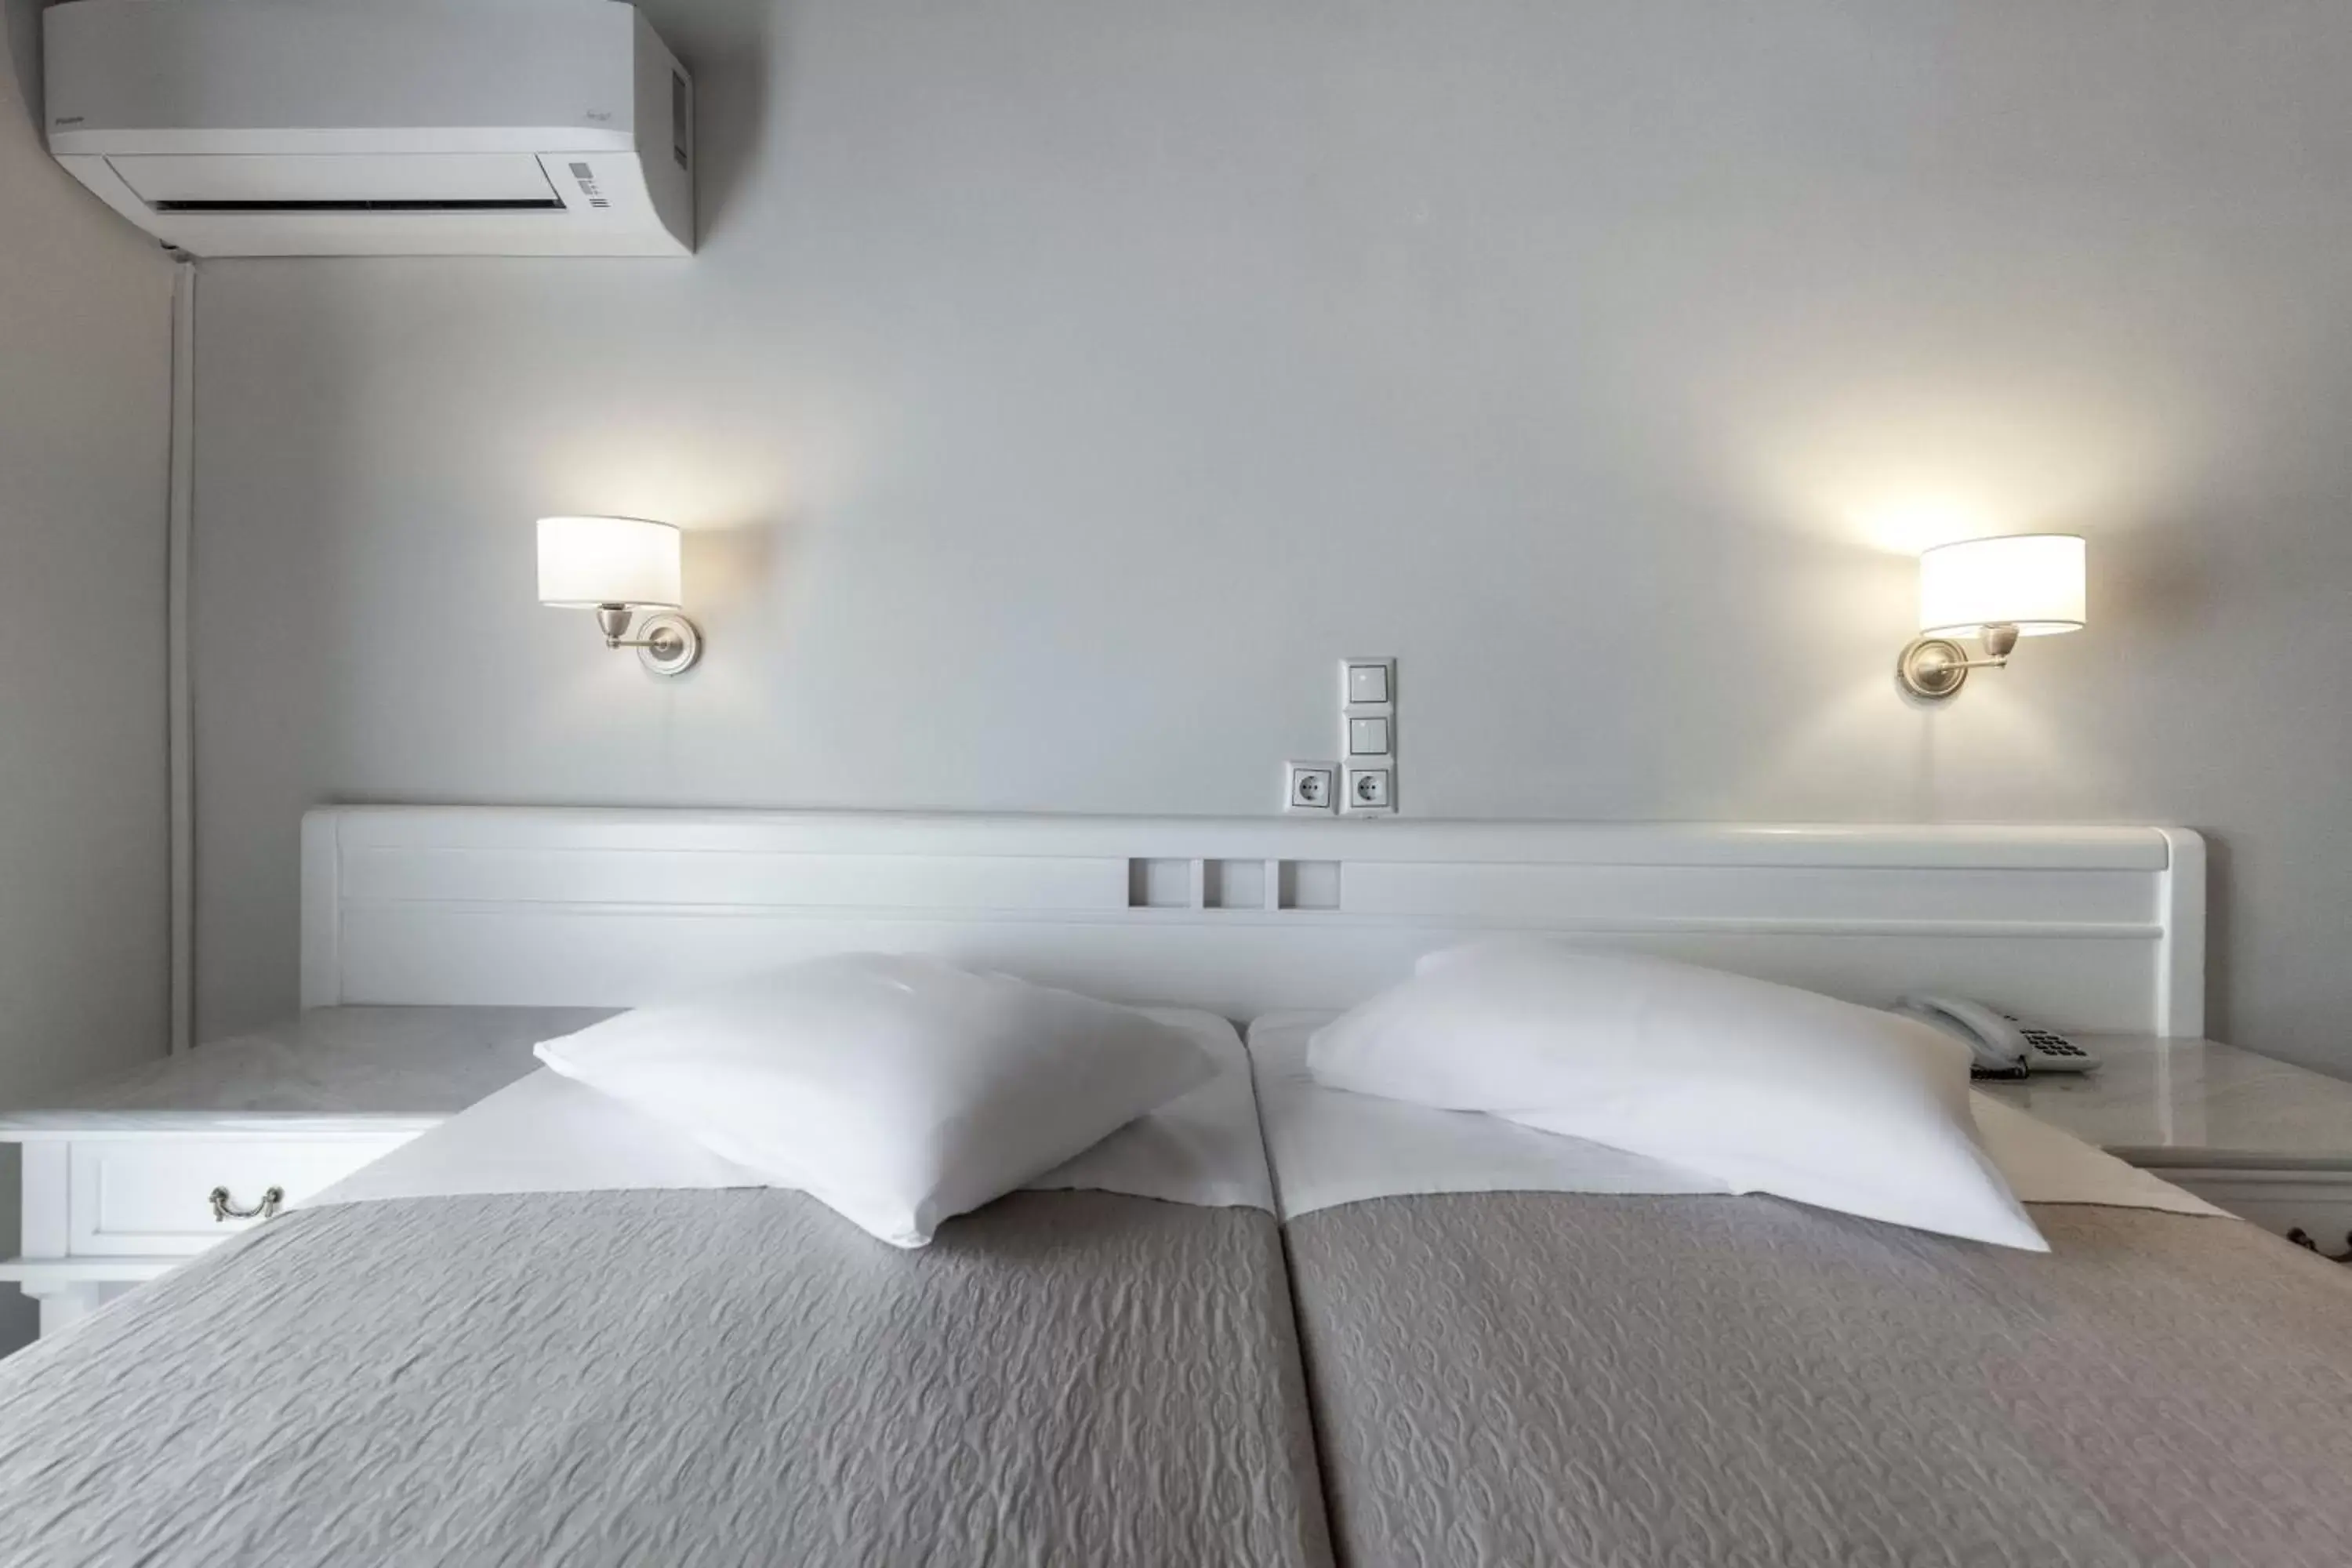 Bed in Parnassos Delphi Hotel